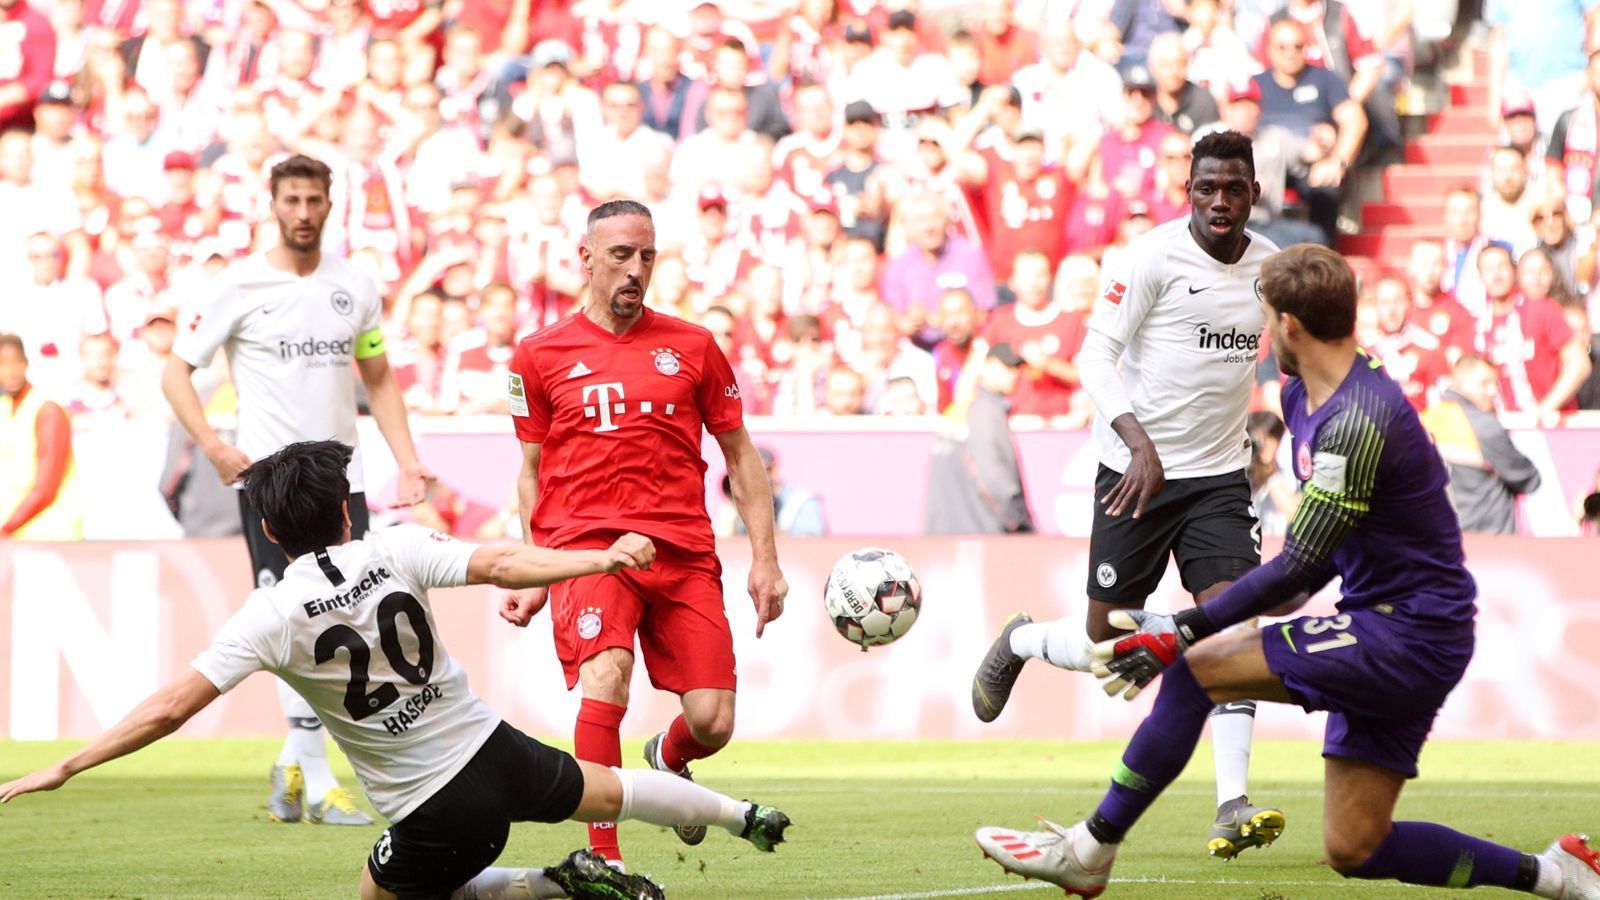 
                <strong>Ribery trifft!</strong><br>
                Erst trifft Franck Ribery nach schönem Dribbling. Der Franzose hebt den Ball über Trapp hinweg zum 4:1 ins Netz.
              